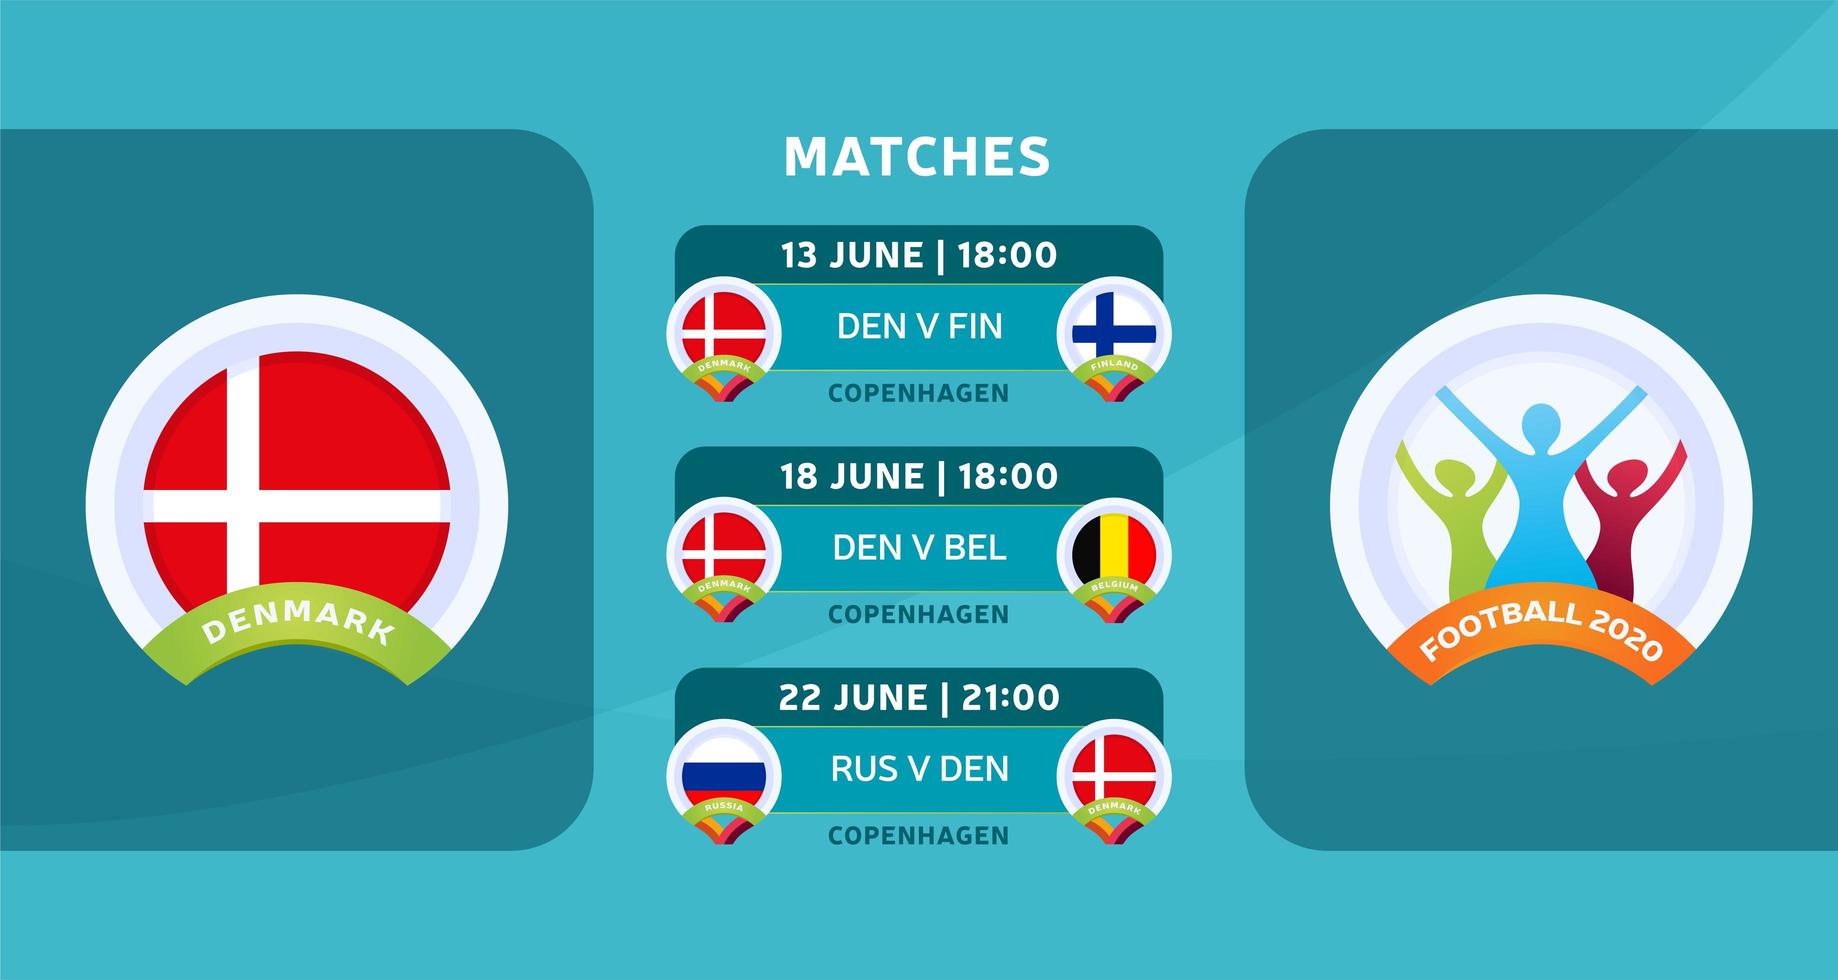 programma delle partite della squadra nazionale della Danimarca nella fase finale del campionato europeo di calcio 2020. illustrazione vettoriale con la ghiaia ufficiale delle partite di calcio.